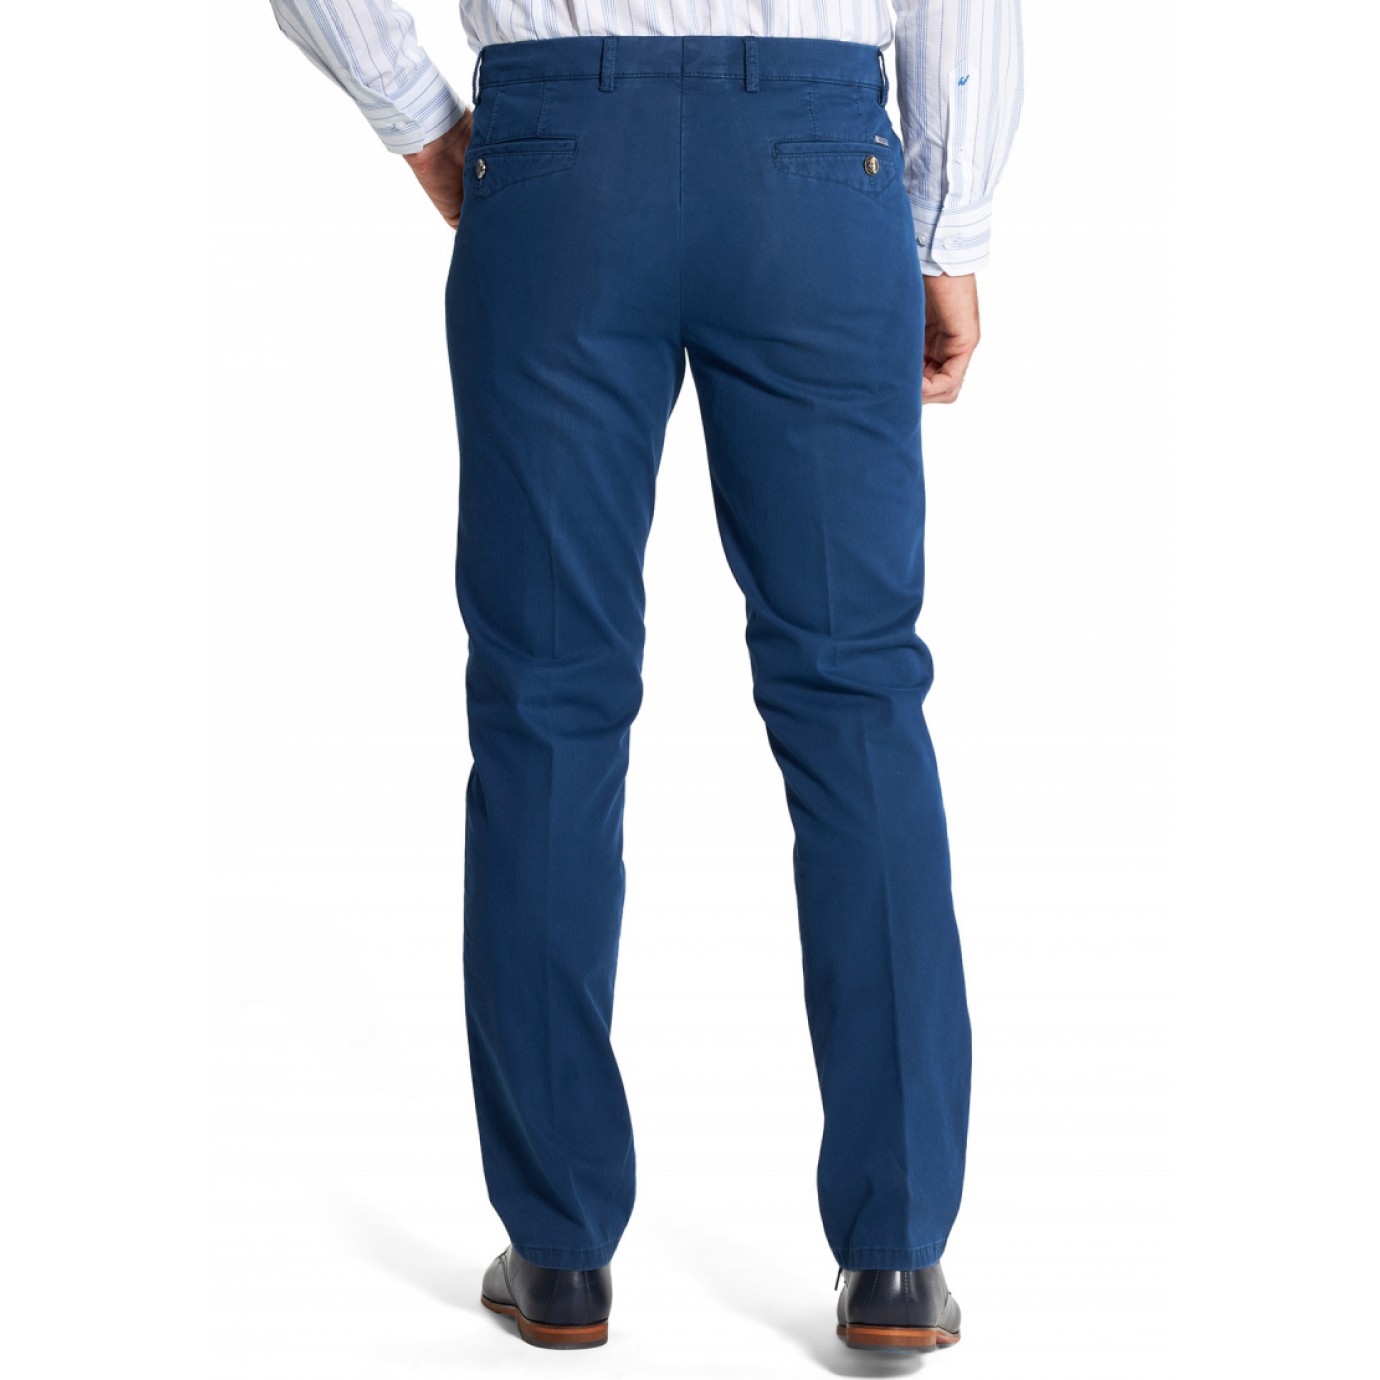 Брюки мужские Meyer Dublin 5-431/18, ярко-синие с джинсовым карманом купитьв Москве в интернет-магазине SHOP4BIG - цена, фото, описание